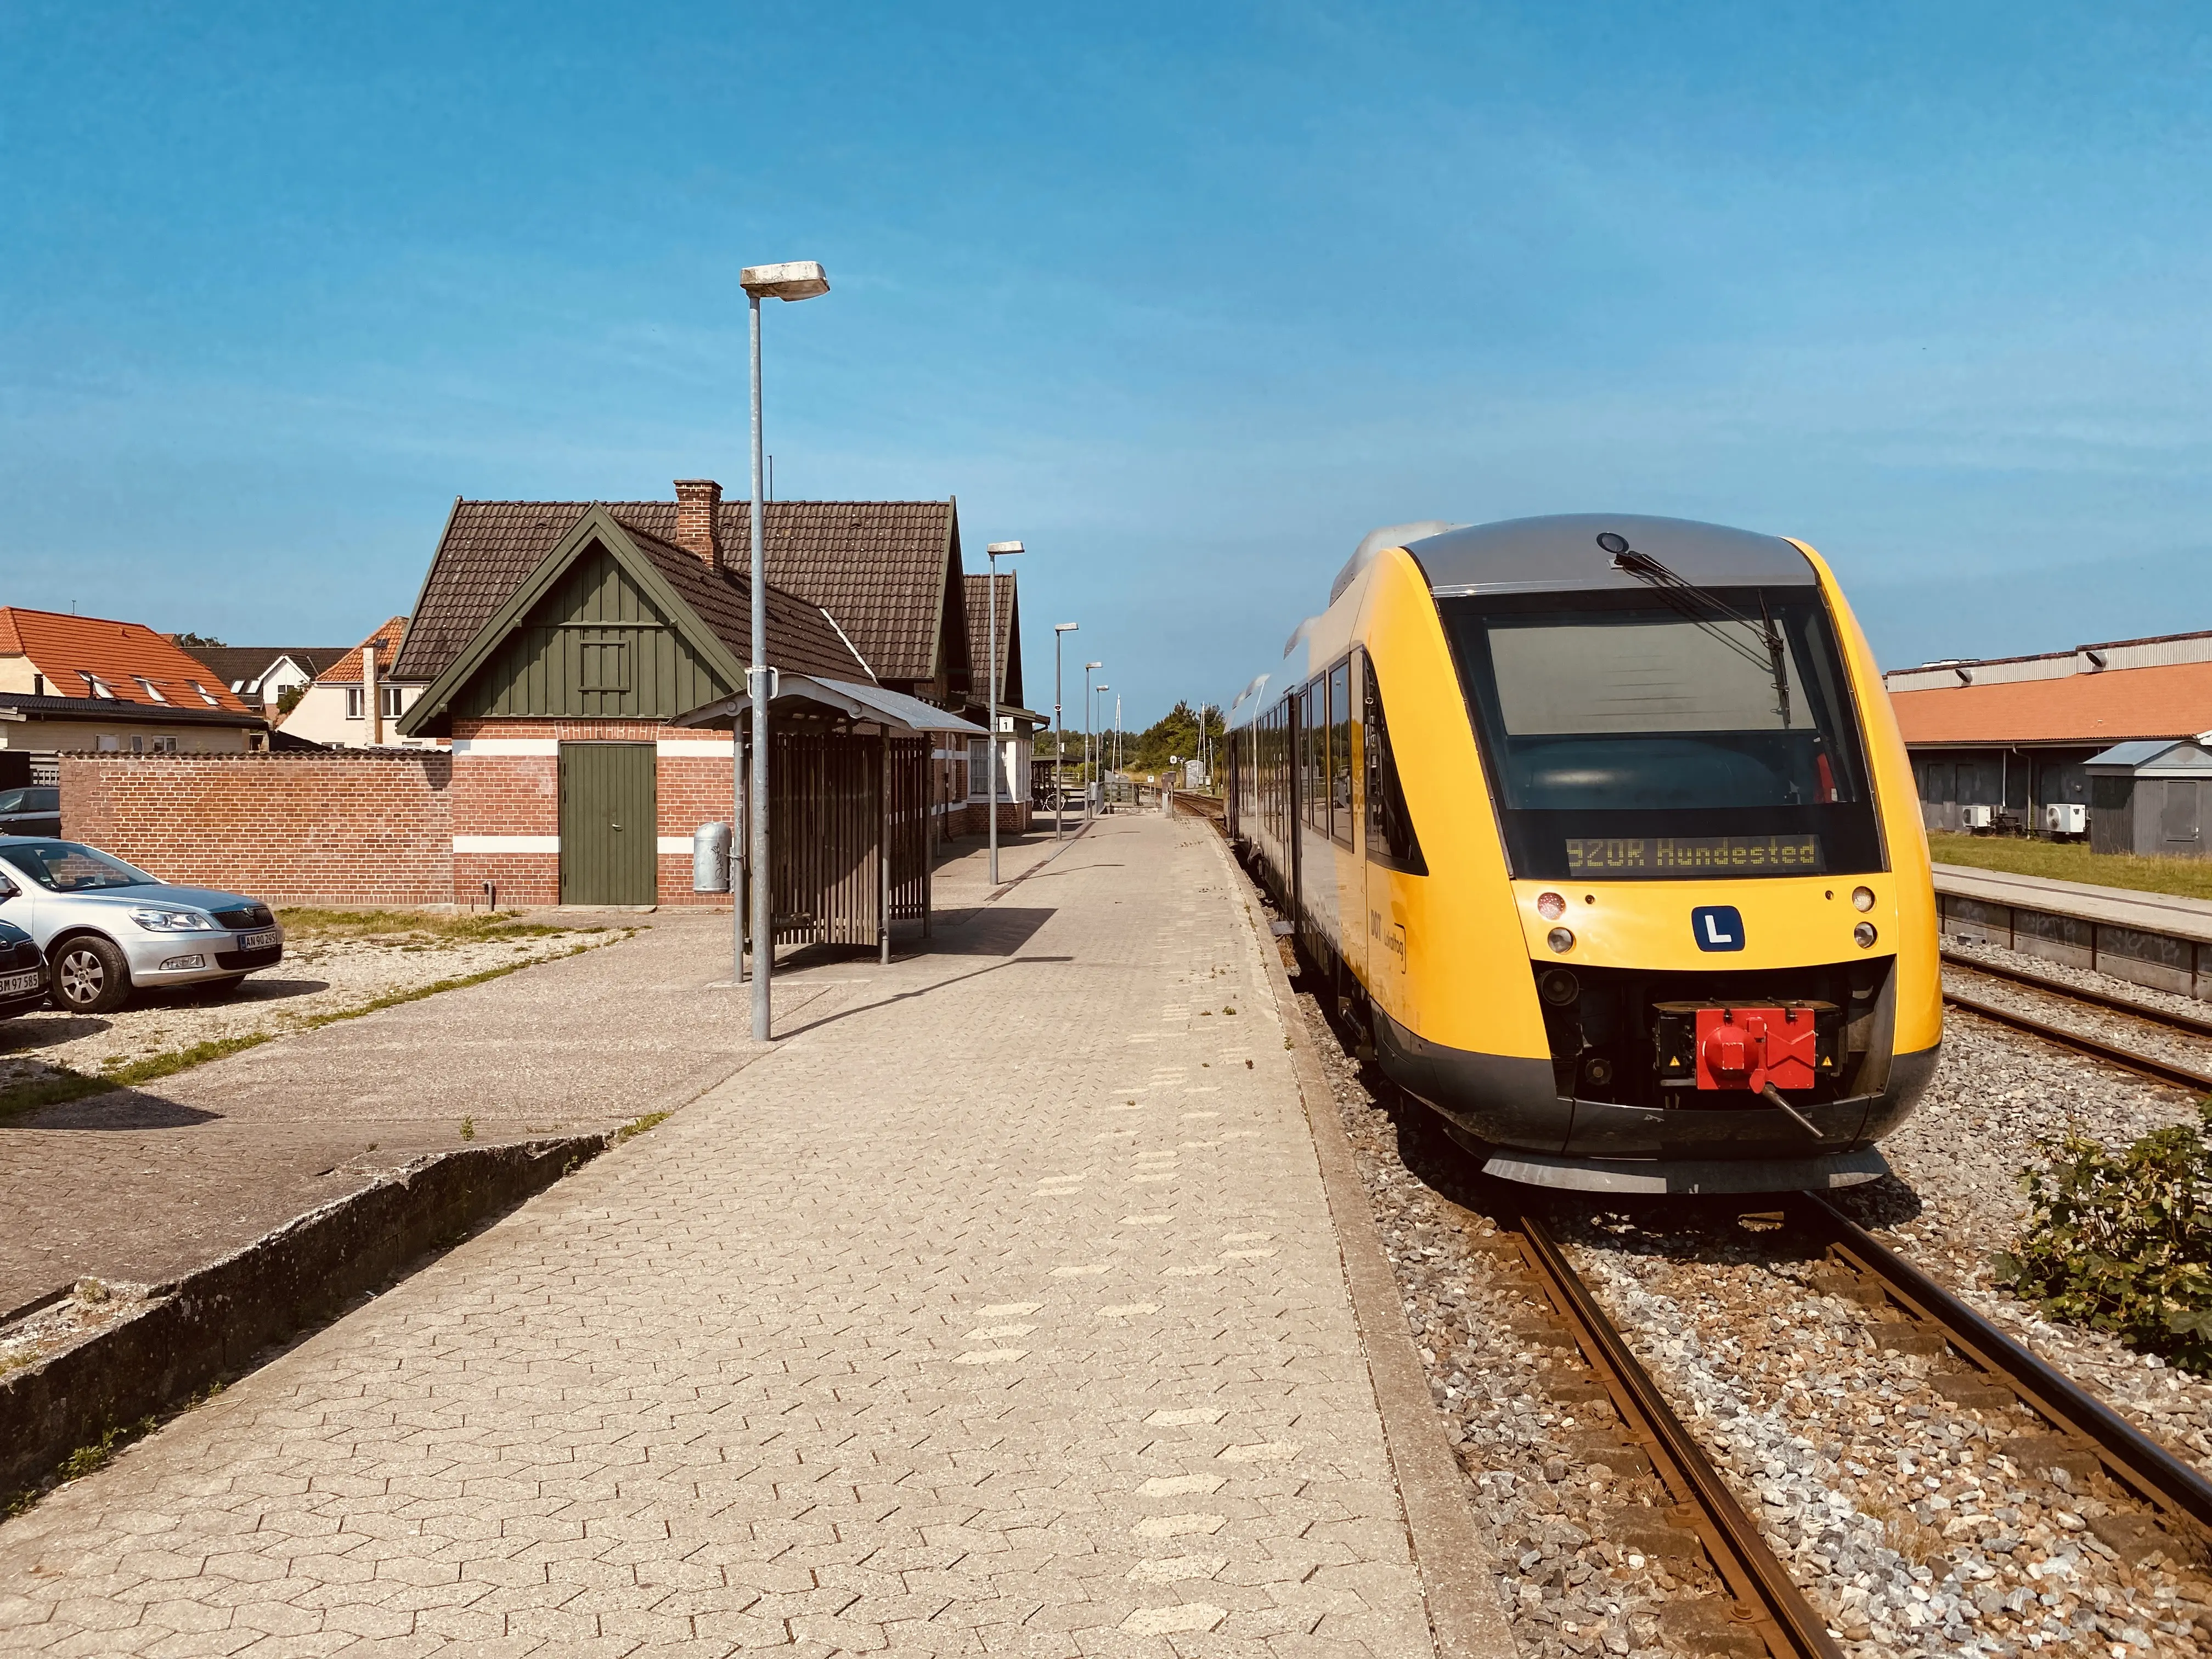 Billede af tog ud for Ølsted Station.